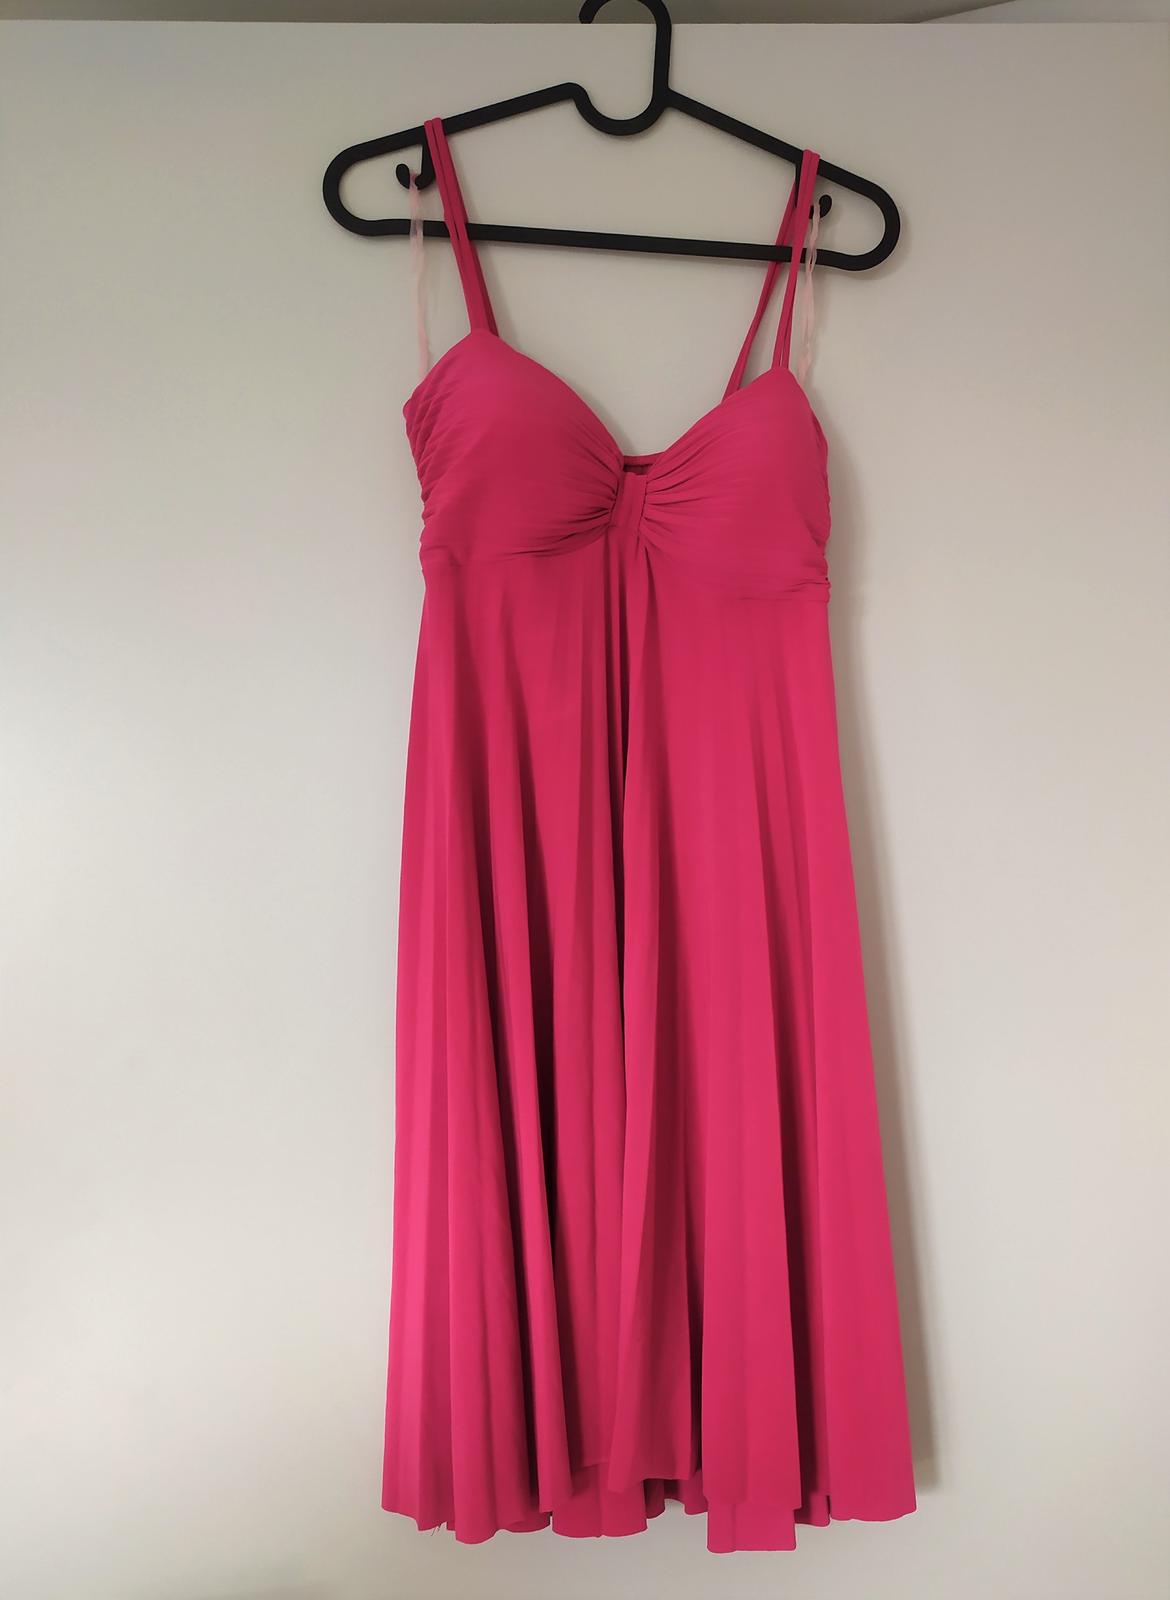 Růžové šaty na ramínka s plisovanou sukní - Obrázek č. 1